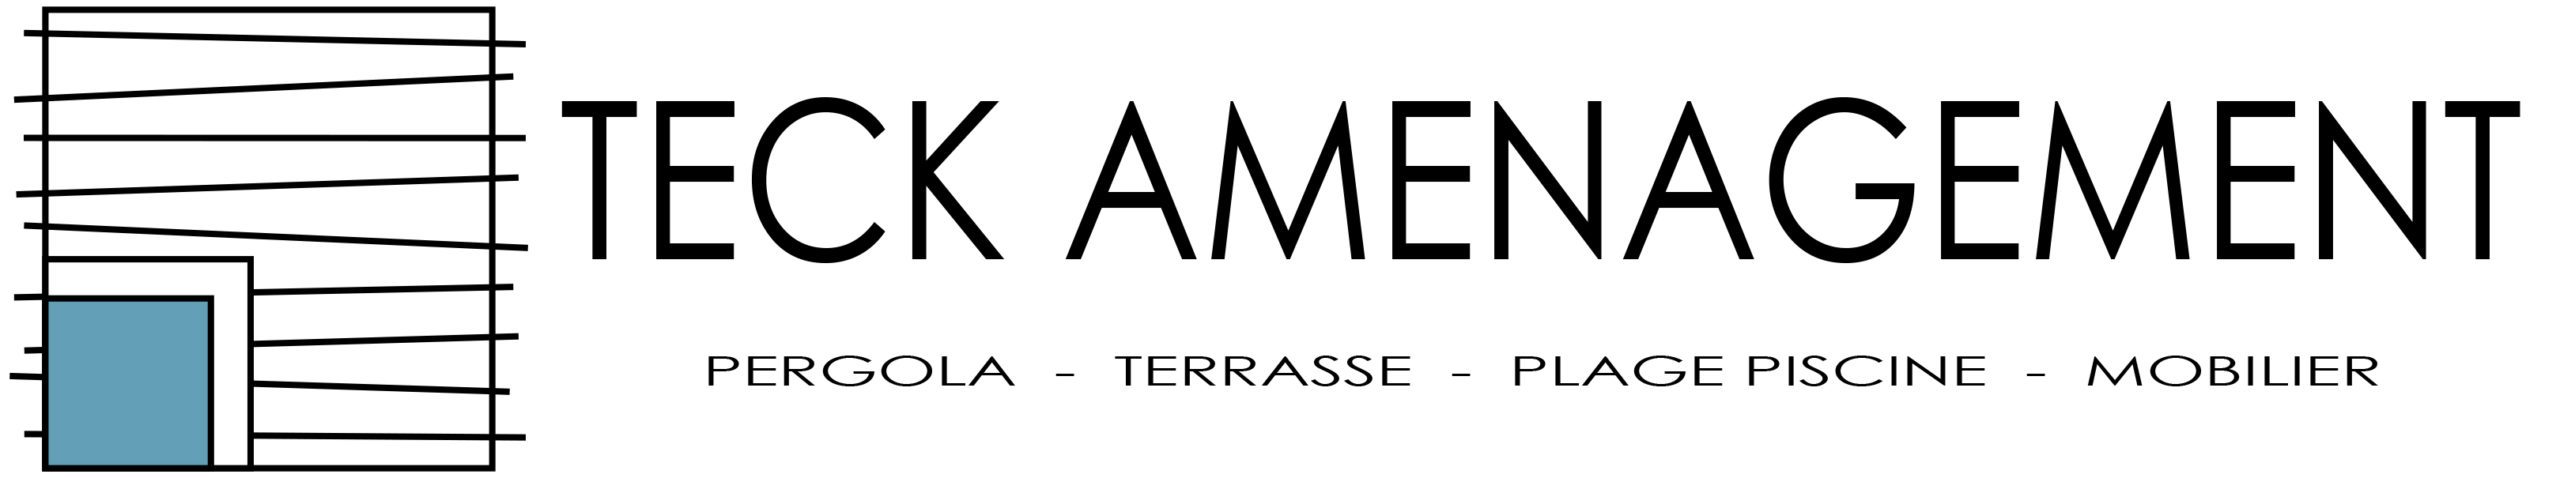 logo teck amenagement